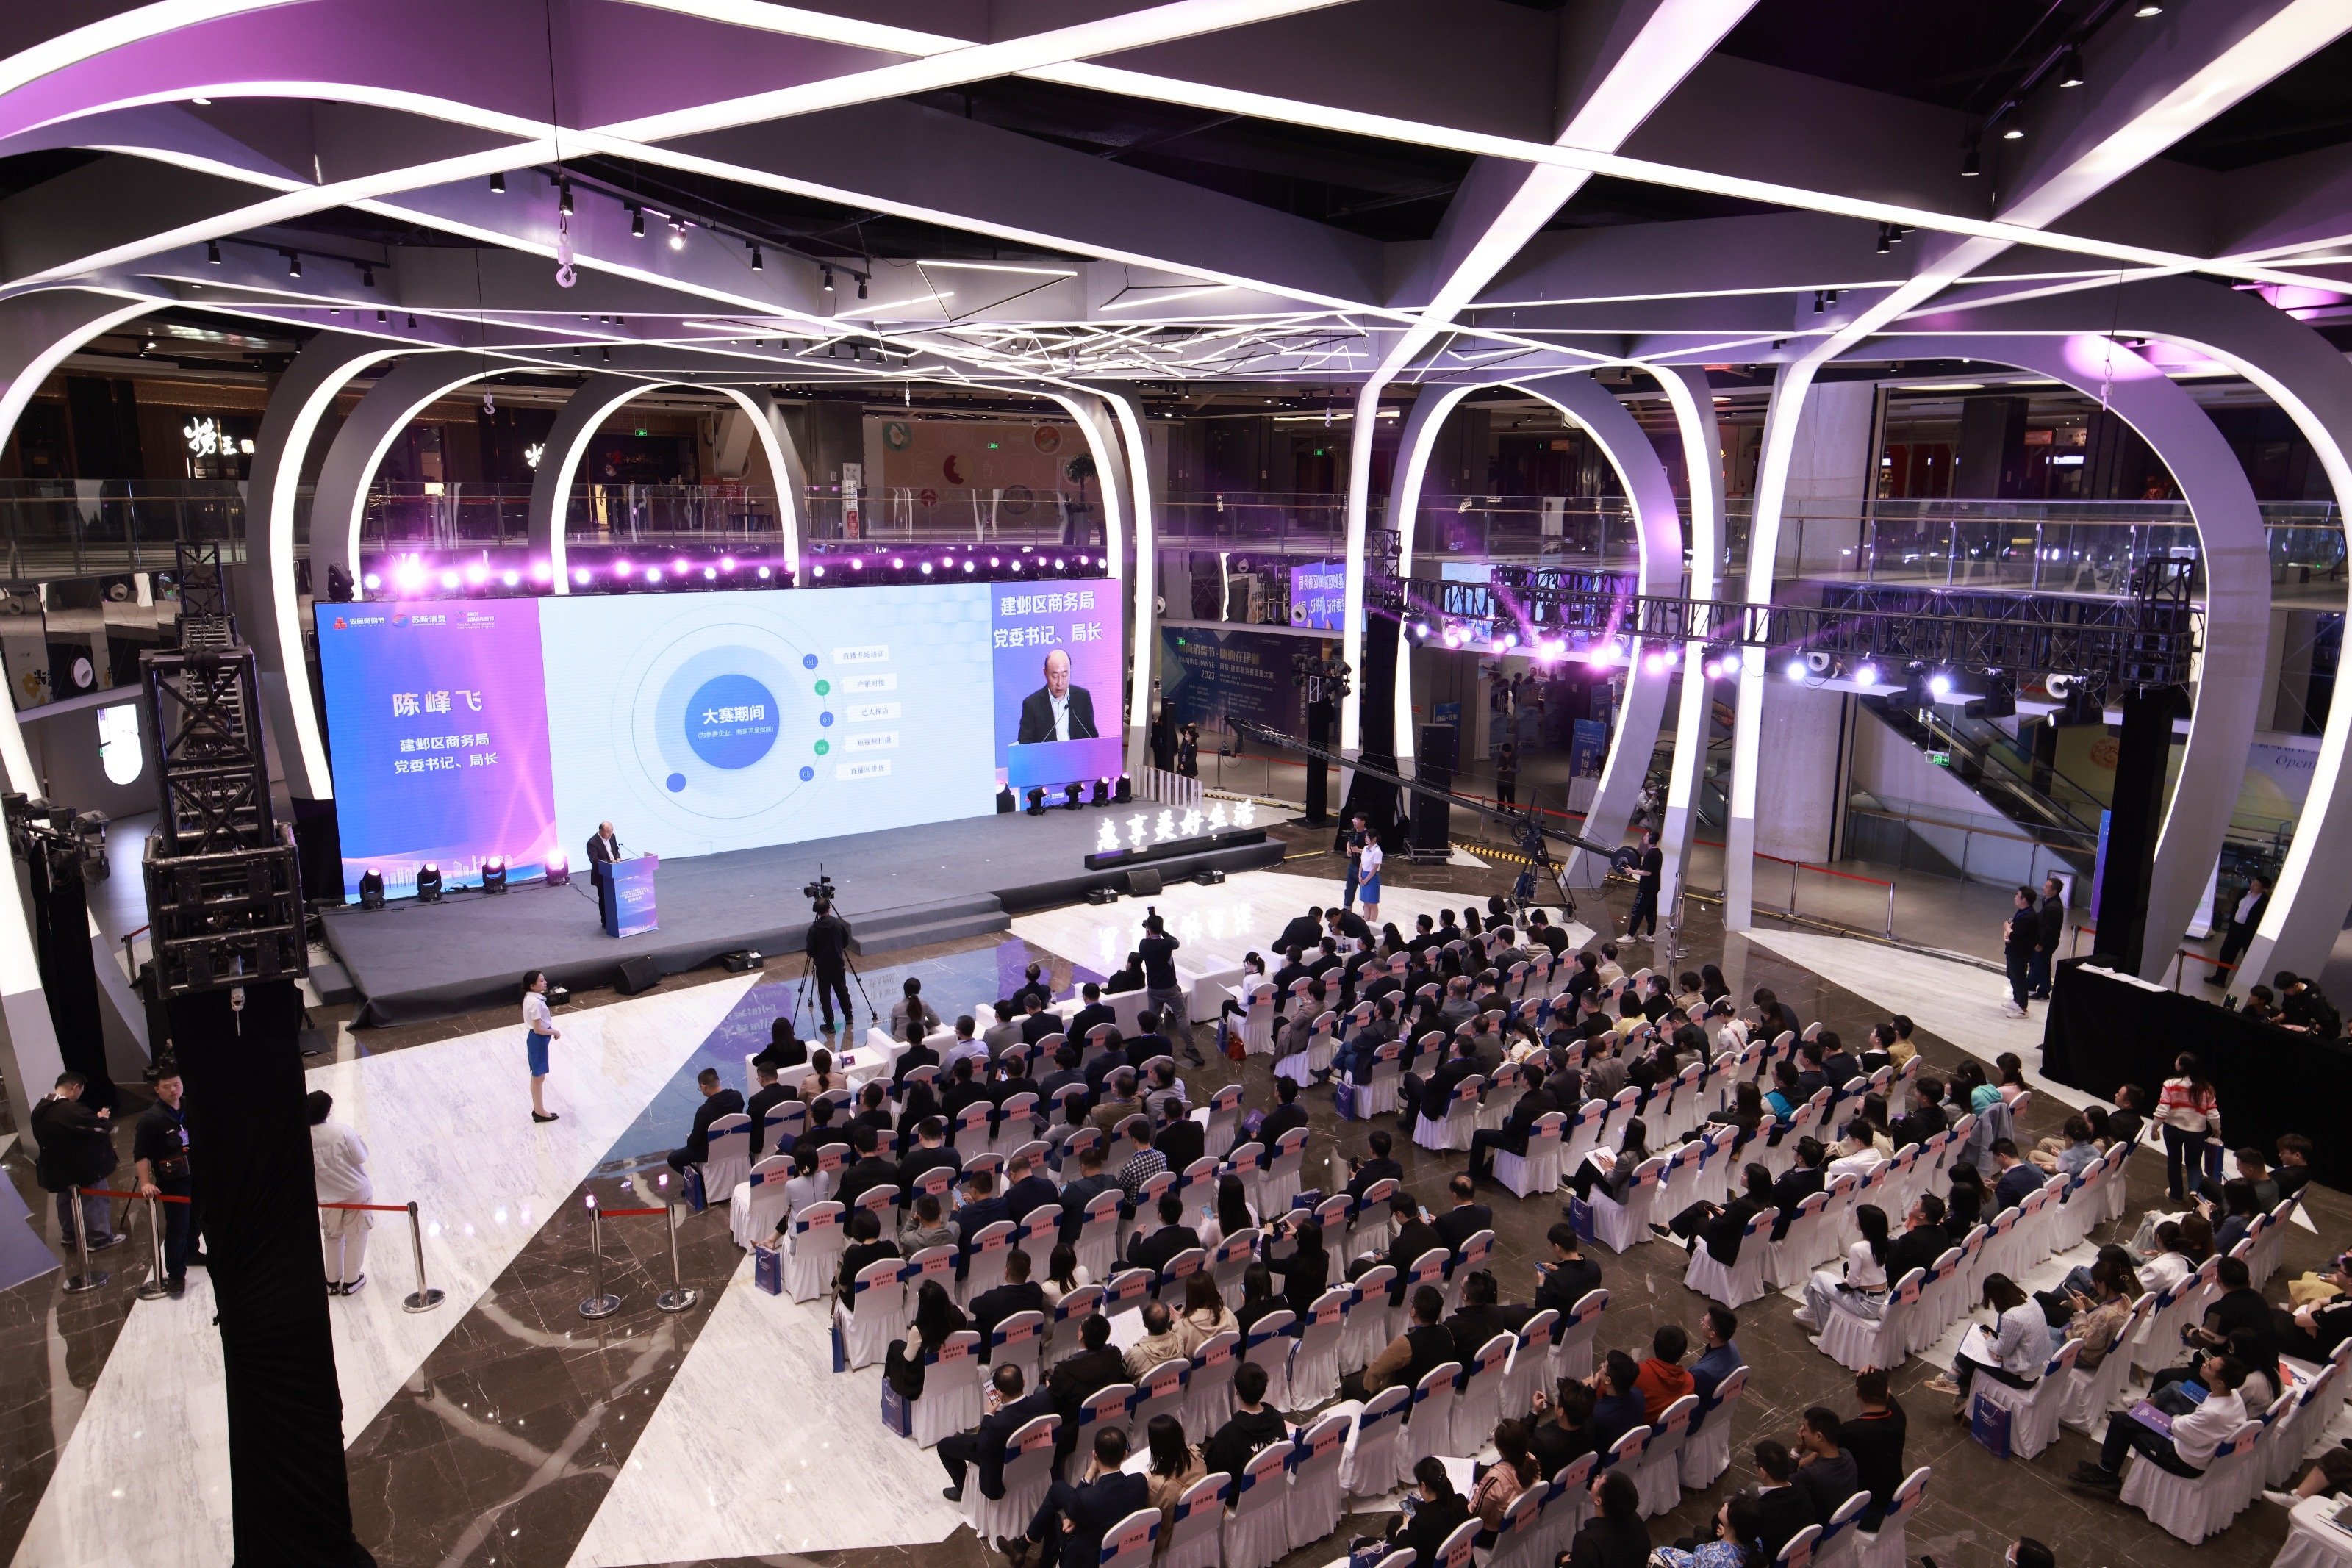 第五届双品网购节（江苏）暨 2023南京直播电商文化节正式启动